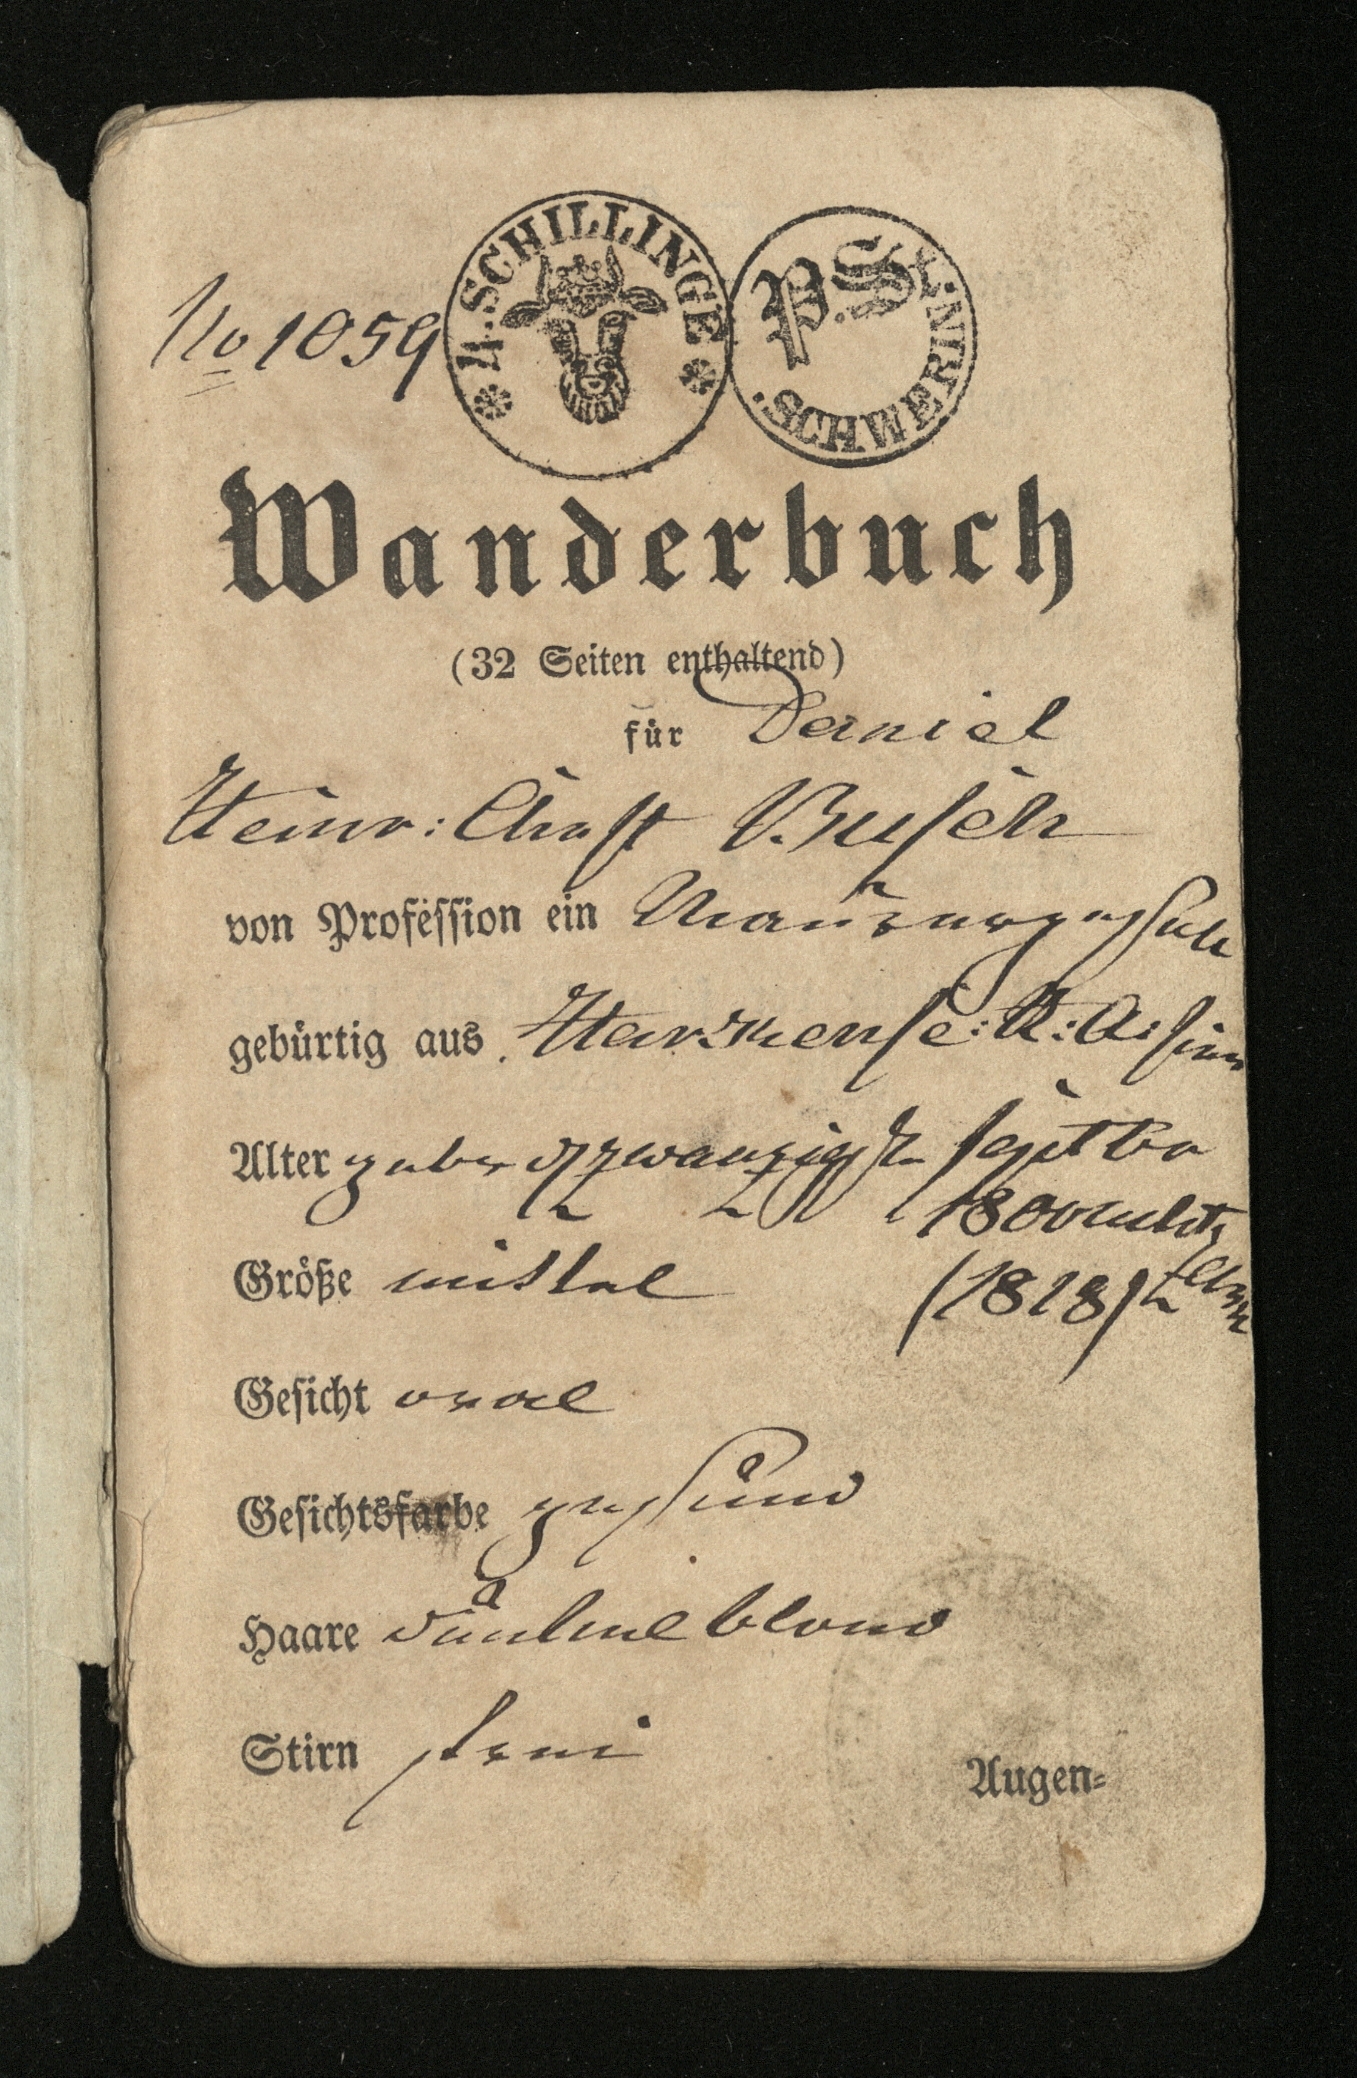 Daniel Heinrich Christian Busch, stone mason, Wanderbuch